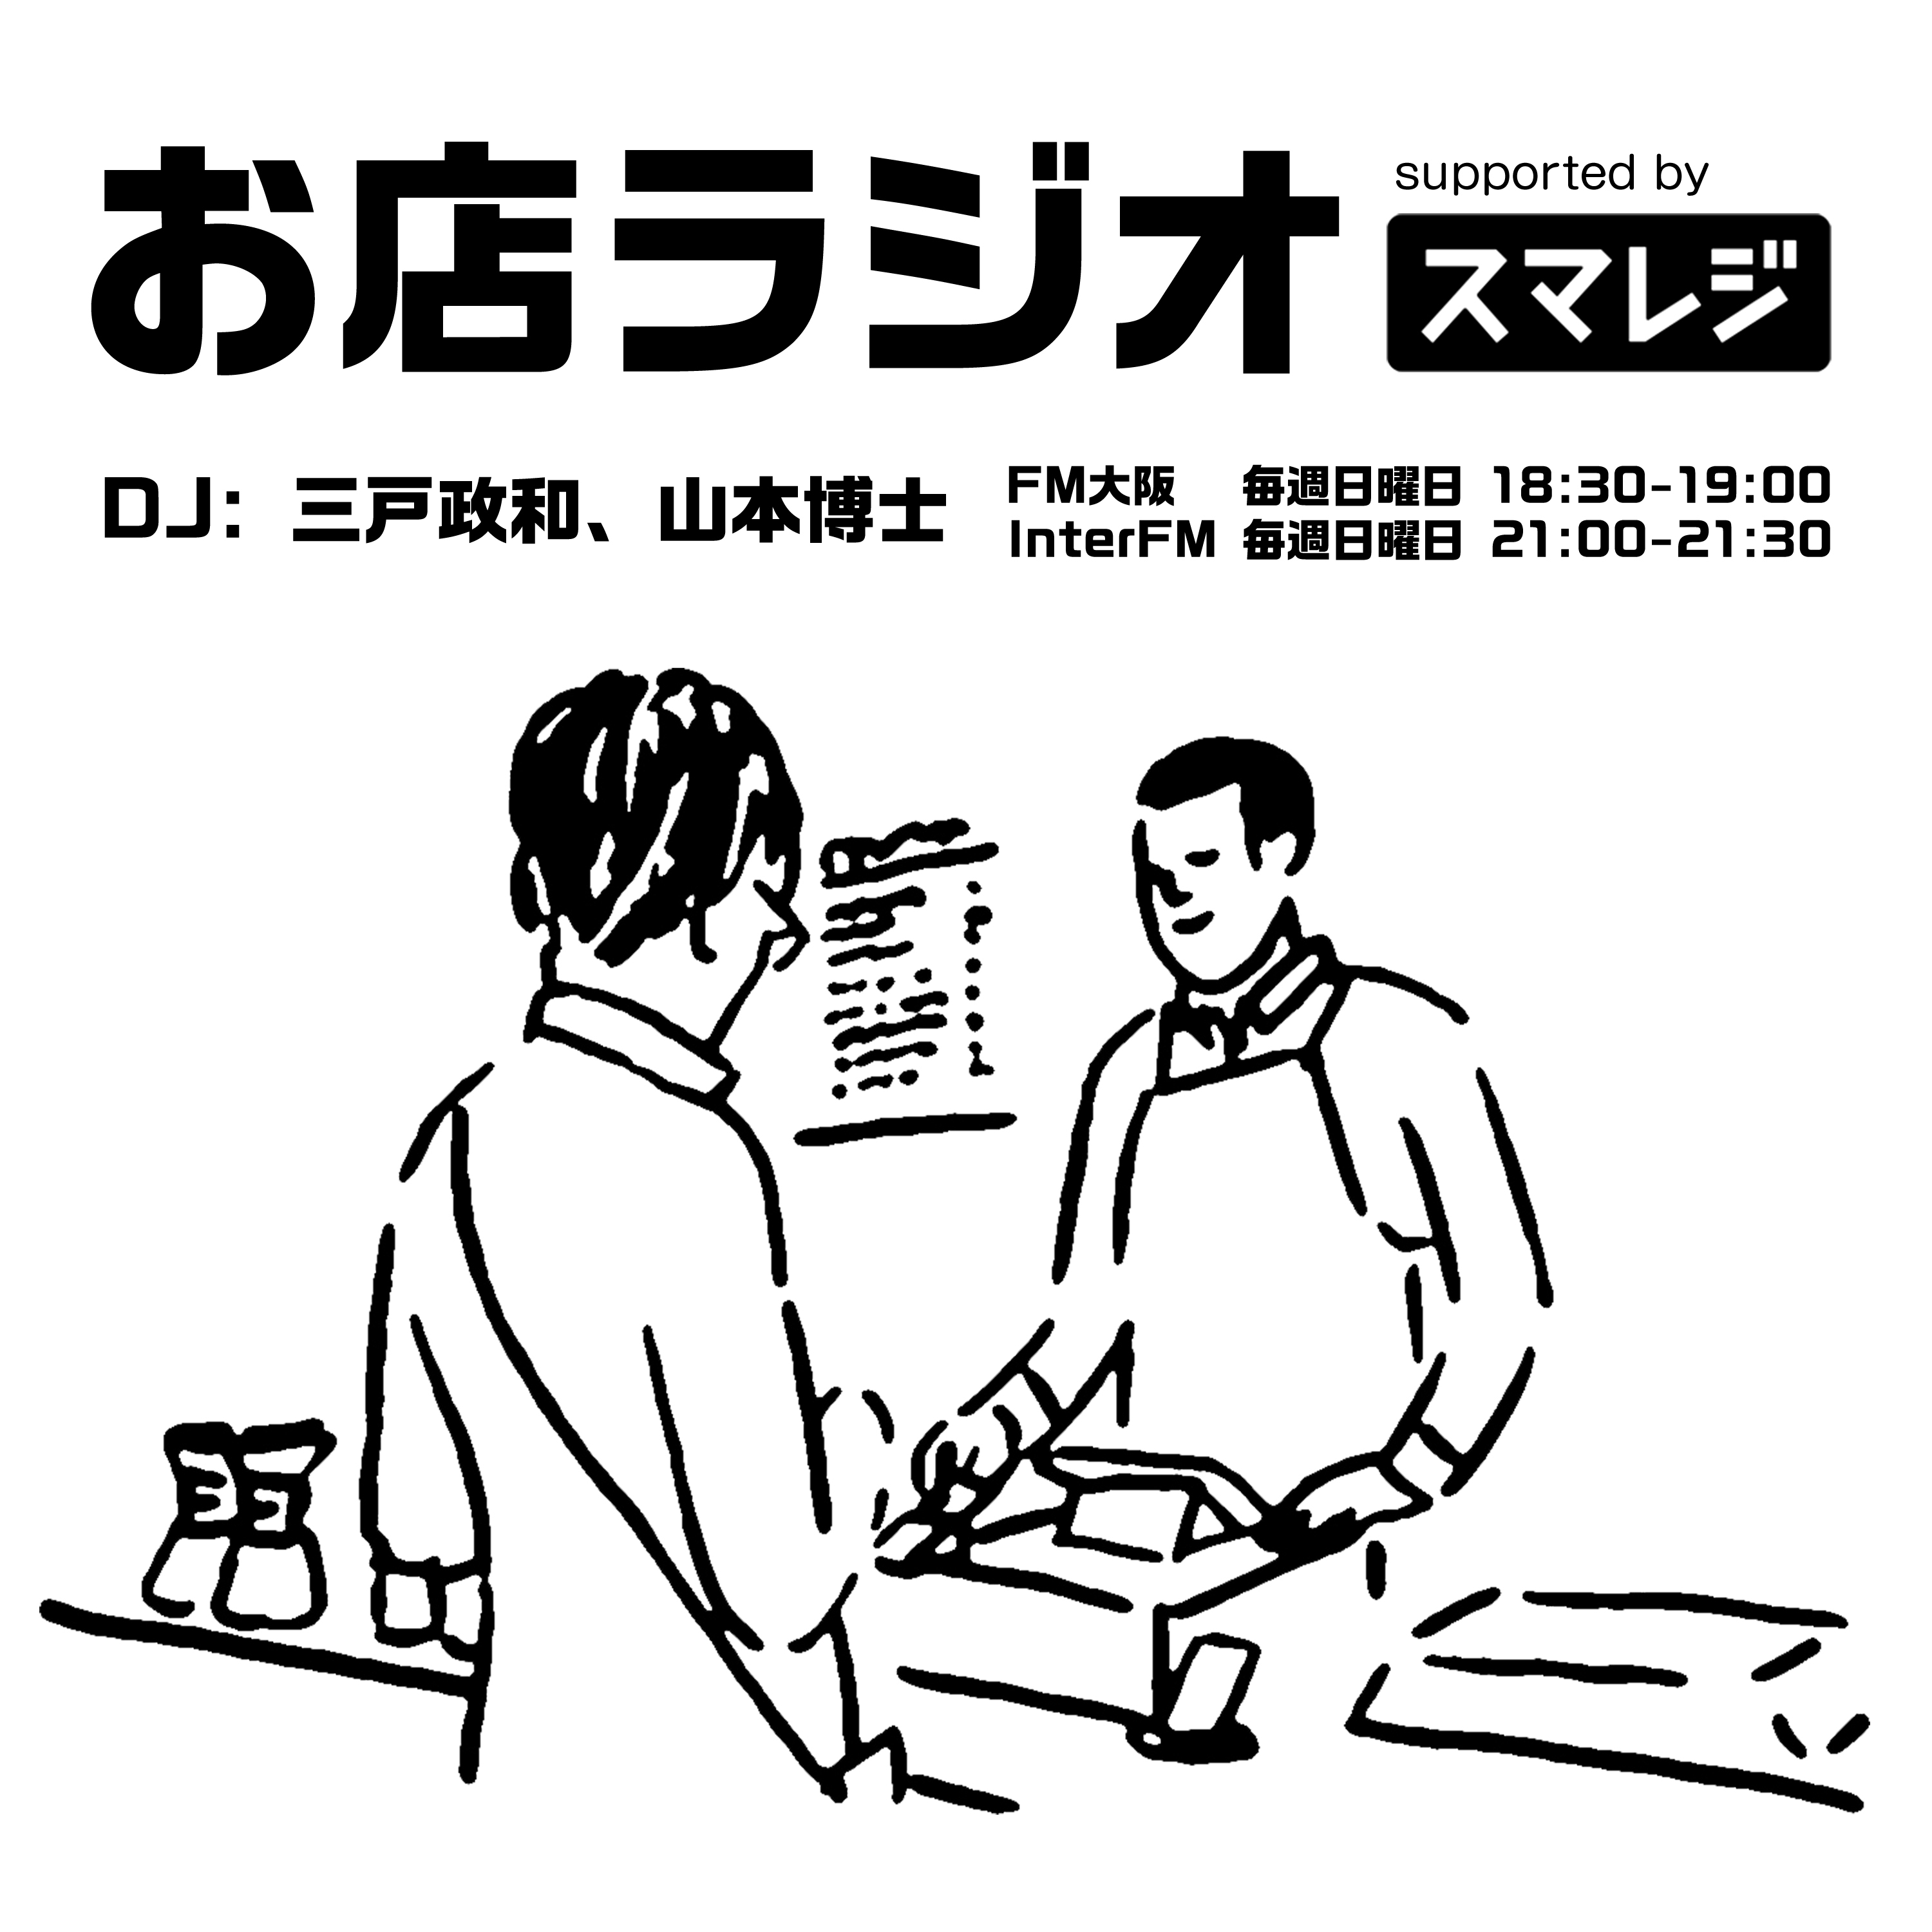 お店ラジオ supported by スマレジ #31